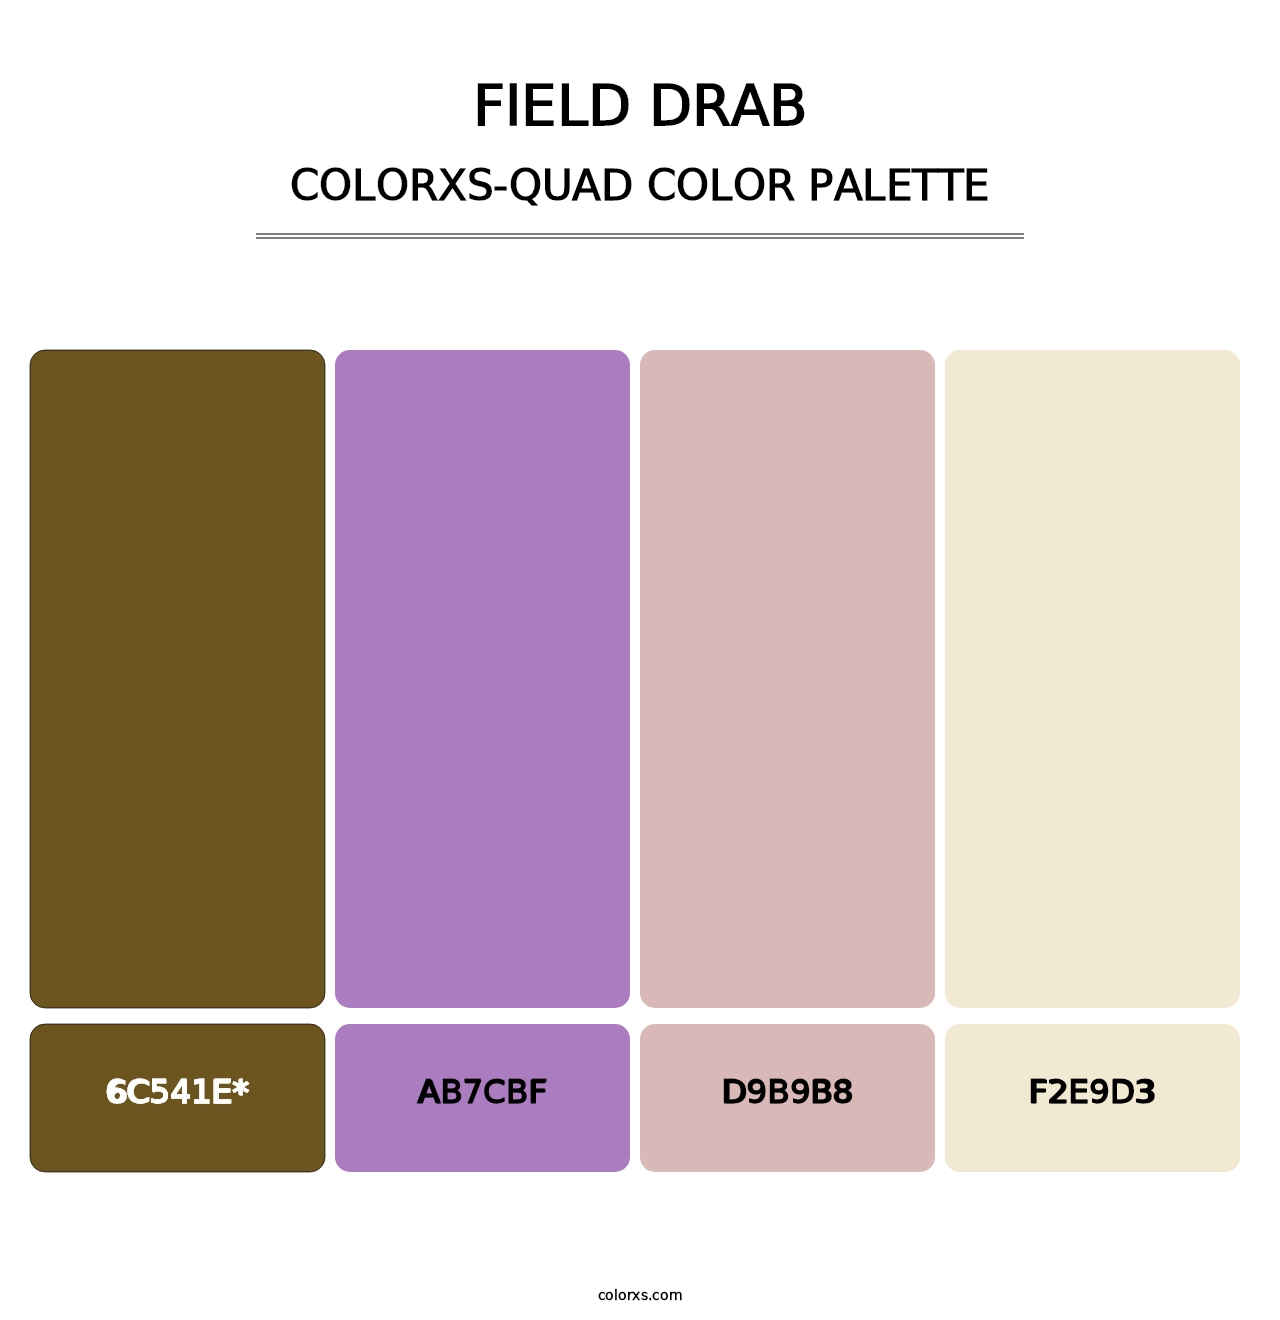 Field Drab - Colorxs Quad Palette